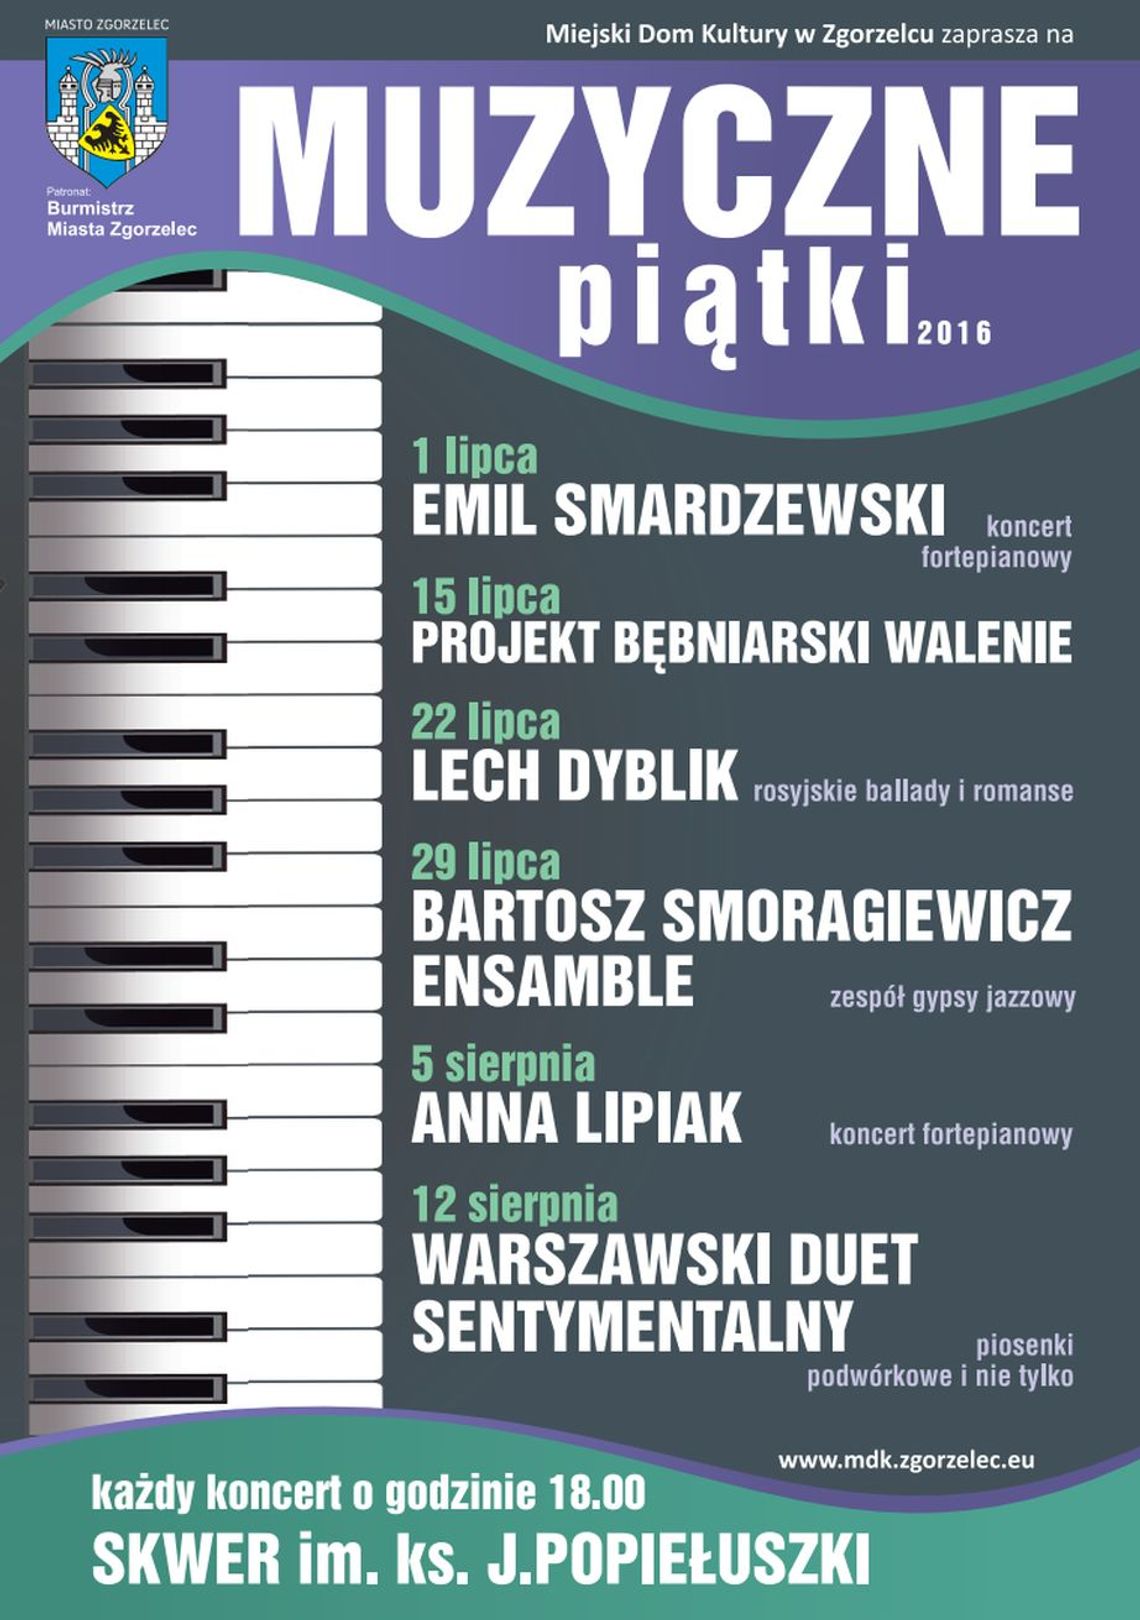 Muzyczne piątki 2016 - Bartosz Smoragiewicz Ensemble, zespół gypsy - jazzowy